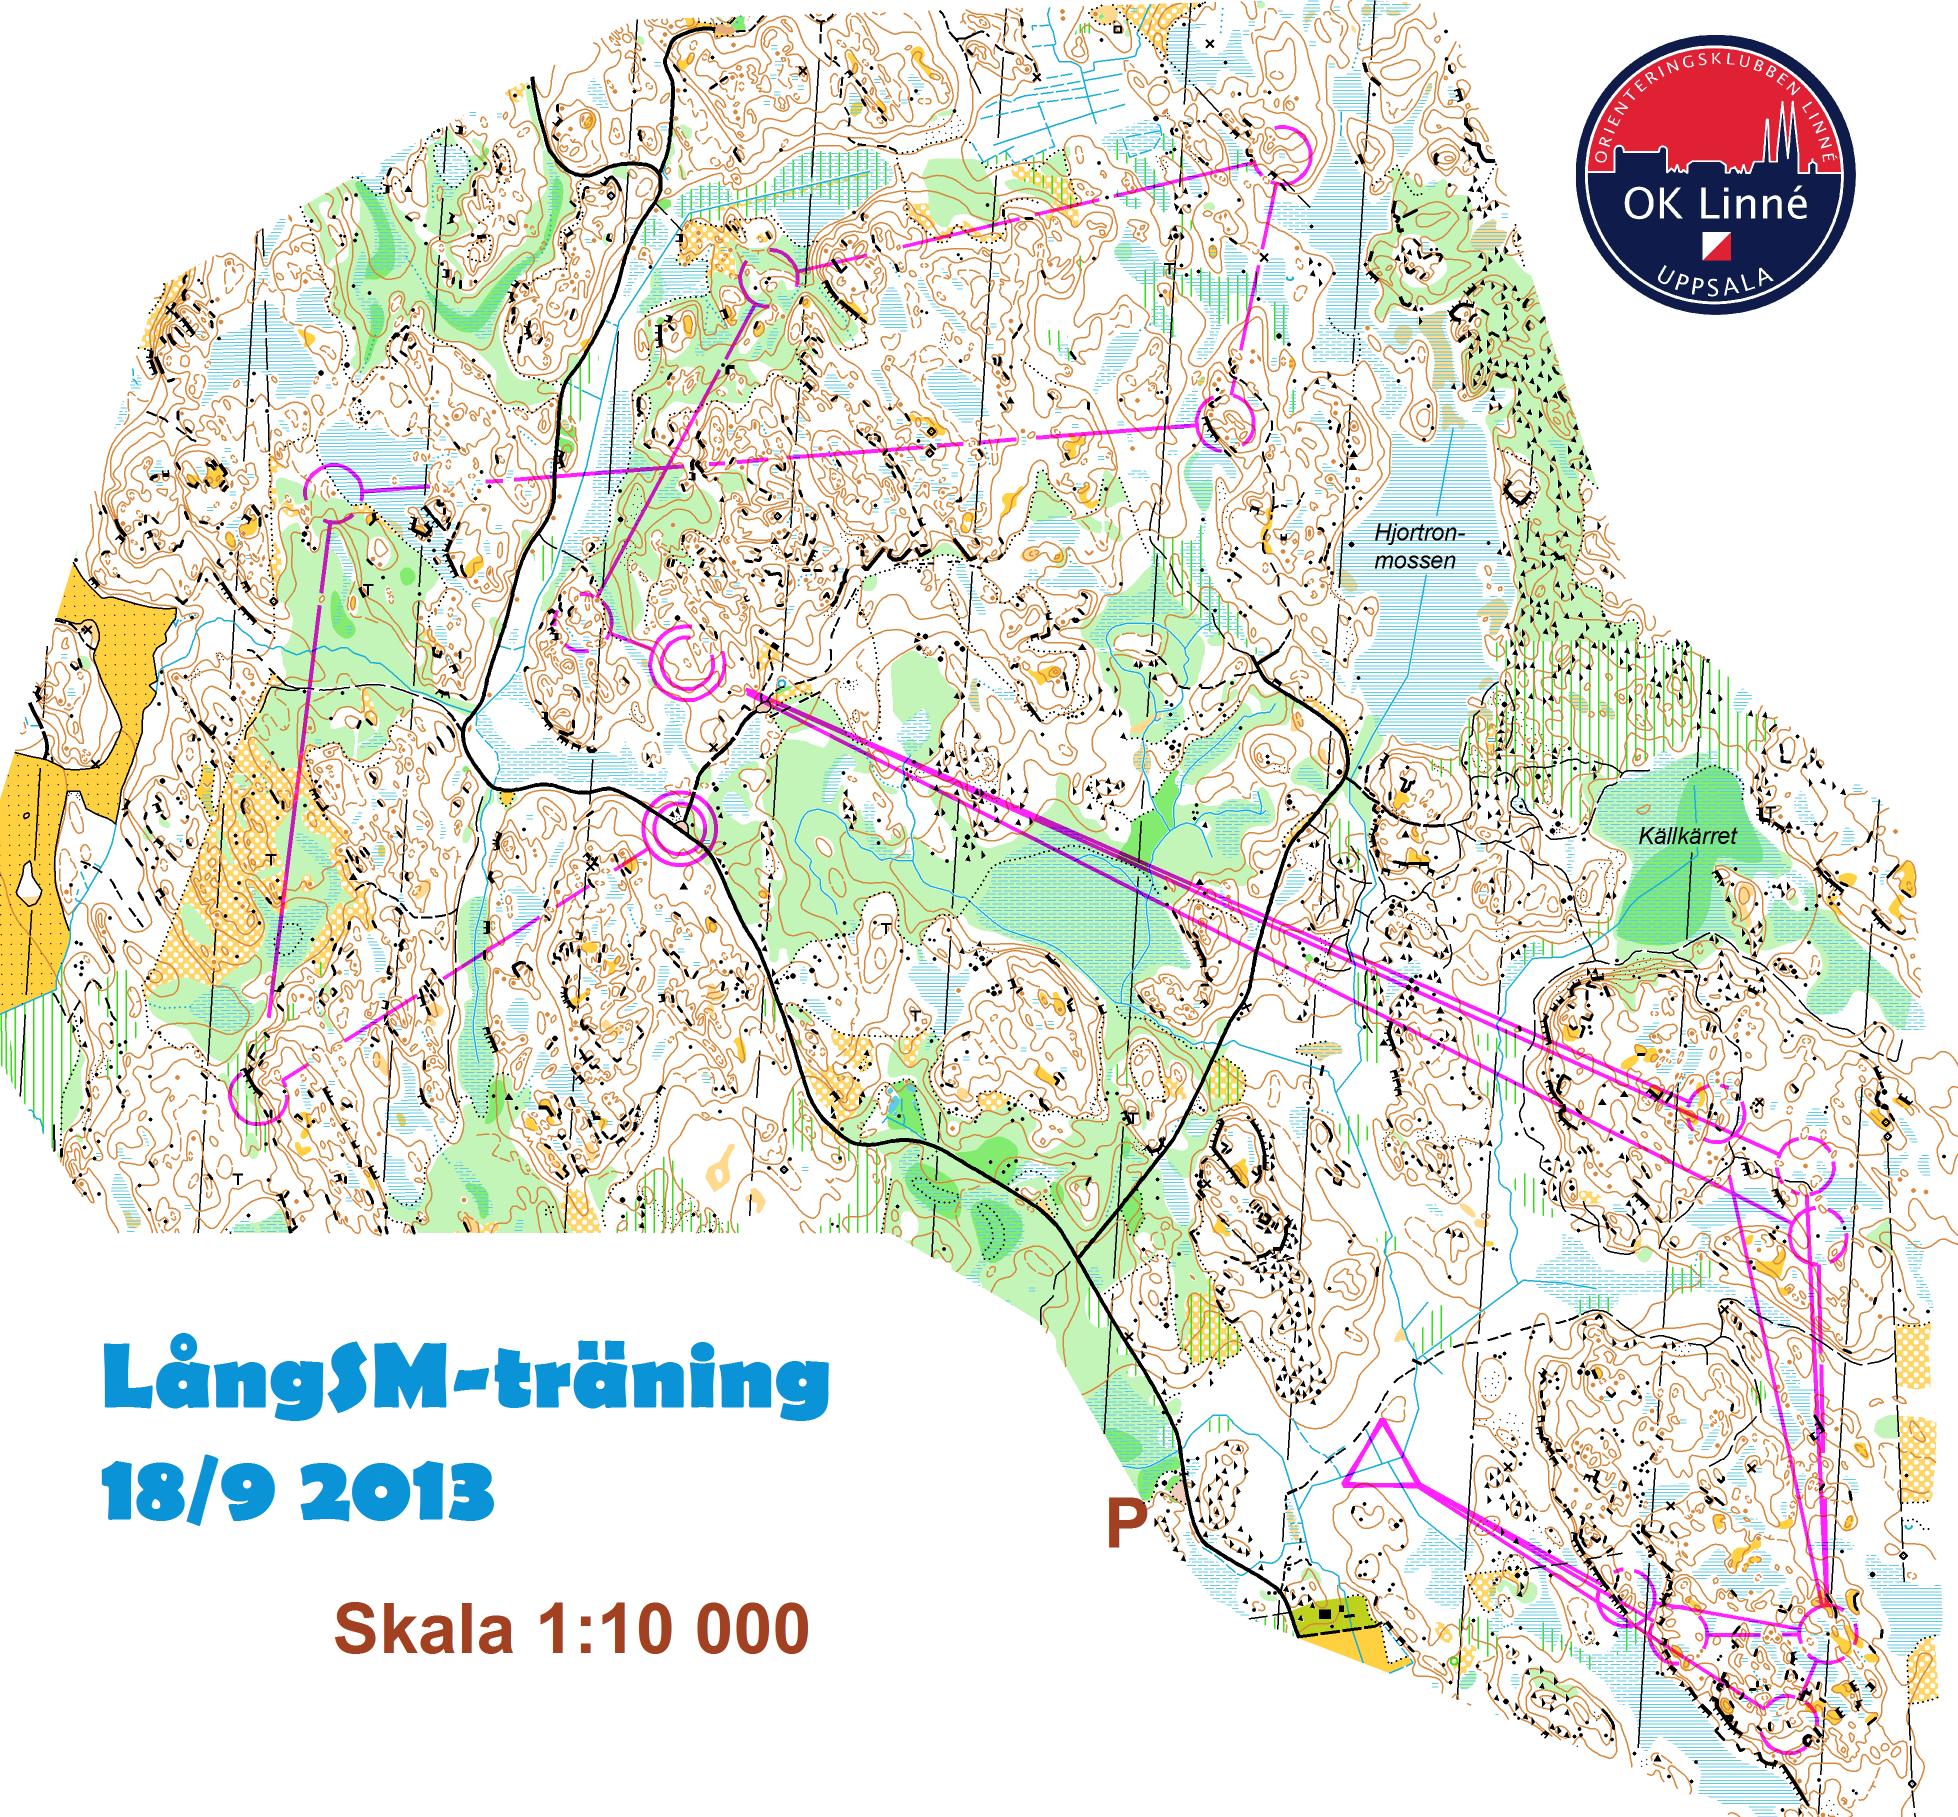 LångSM-träning - Lång (2013-09-18)